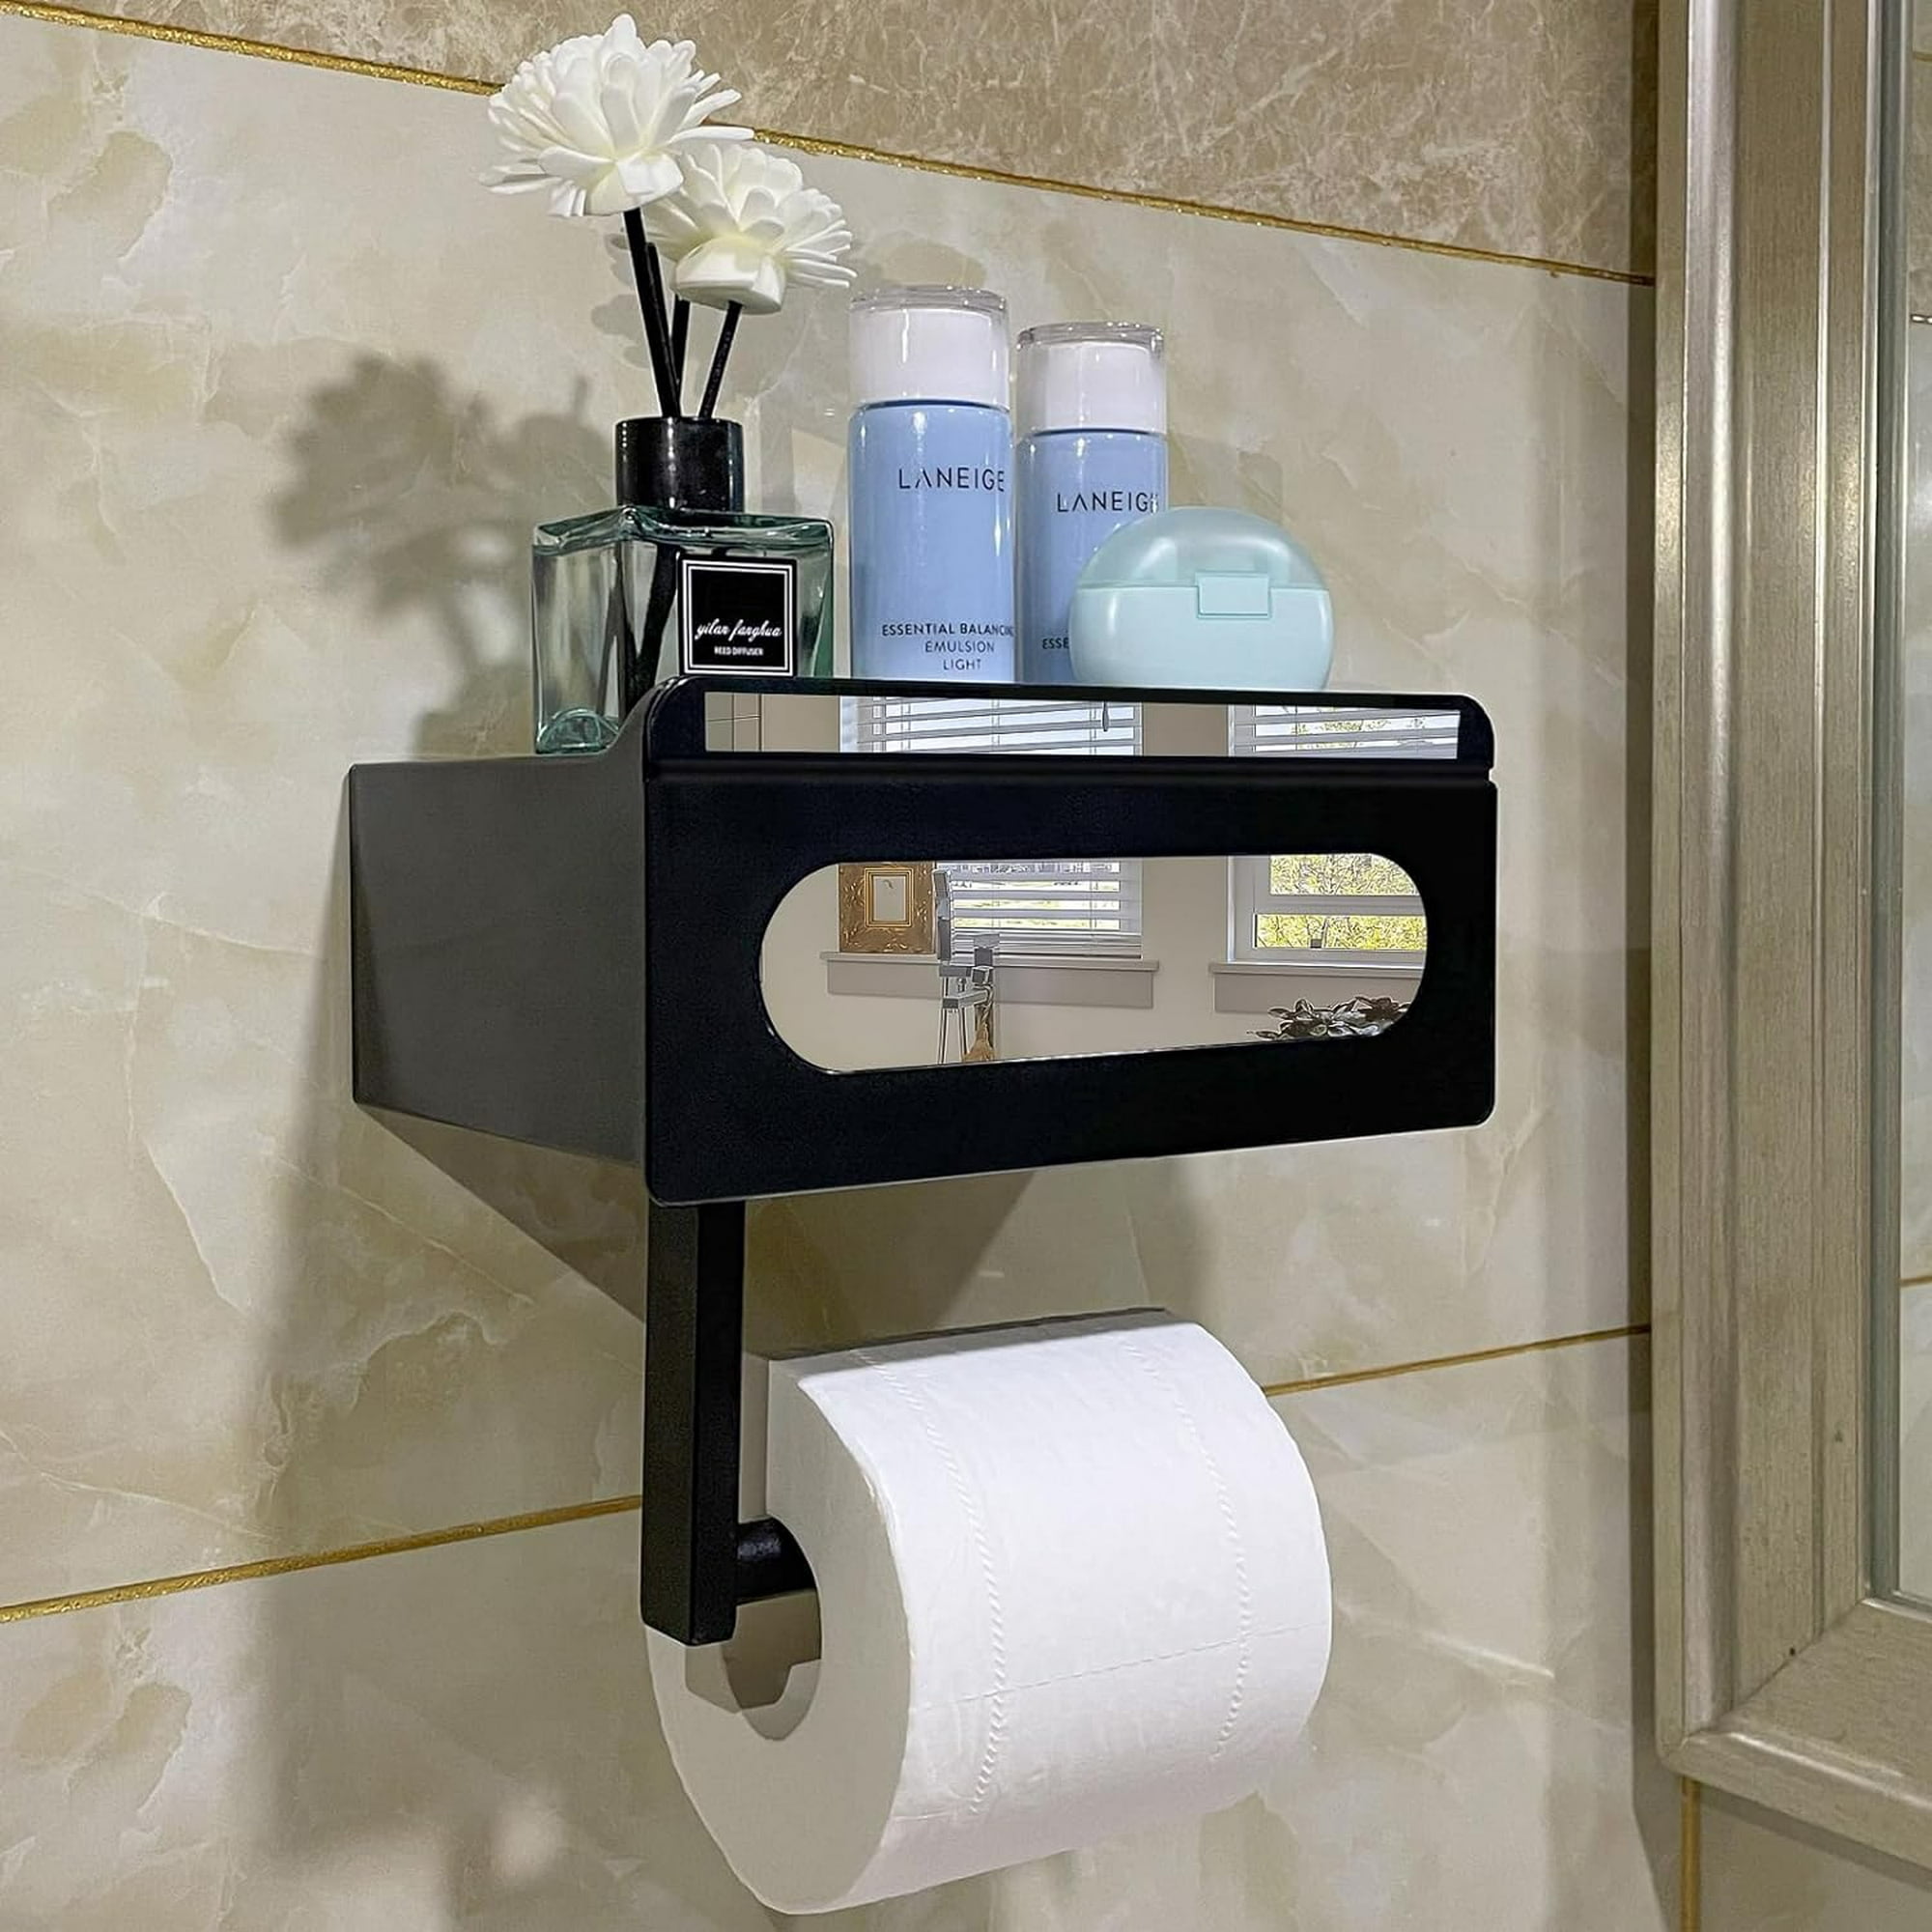 Soporte de papel higiénico portátil, dispensador de papel higiénico para  montaje en pared, caja de pañuelos para el hogar, baño, juego de accesorios